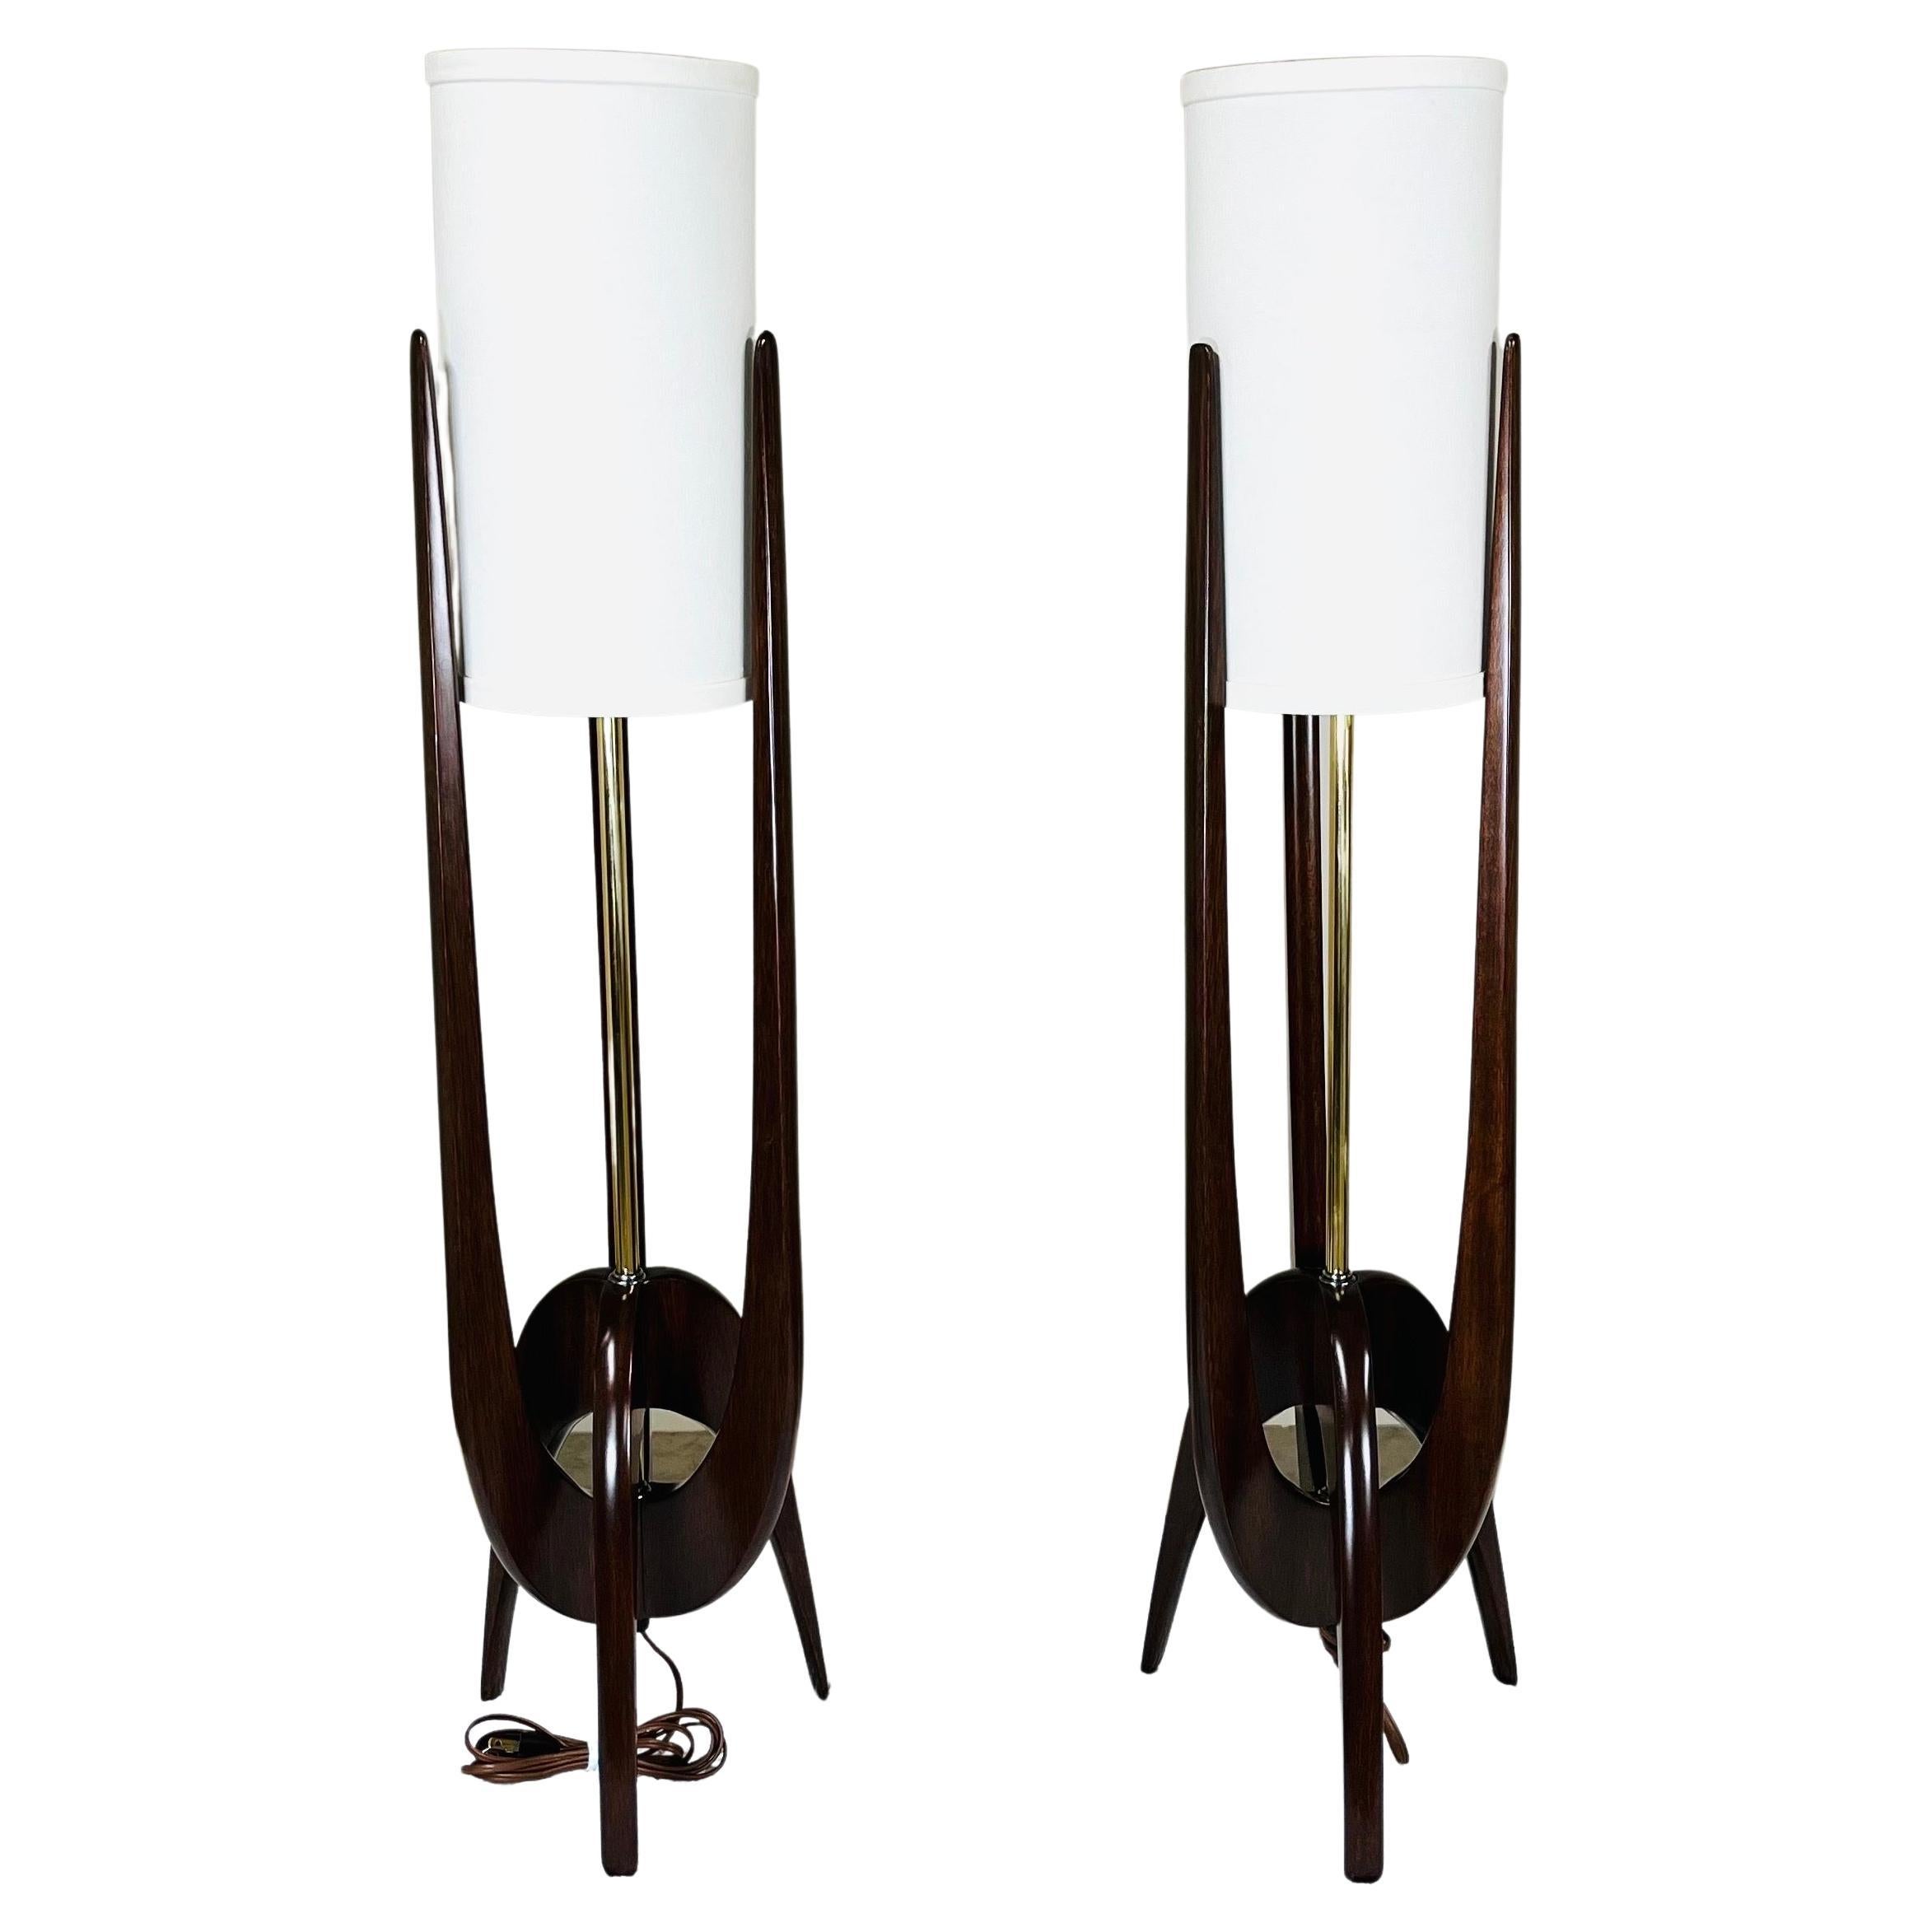 Ein atemberaubendes Paar skulpturaler Mahagoni-Dreizack-Tischlampen, die John Keal zugeschrieben werden und von Modeline um 1960 hergestellt wurden. Sie haben neu lackierte Rahmen mit neuen Schirmen und frischer Verkabelung. 
In perfektem Zustand